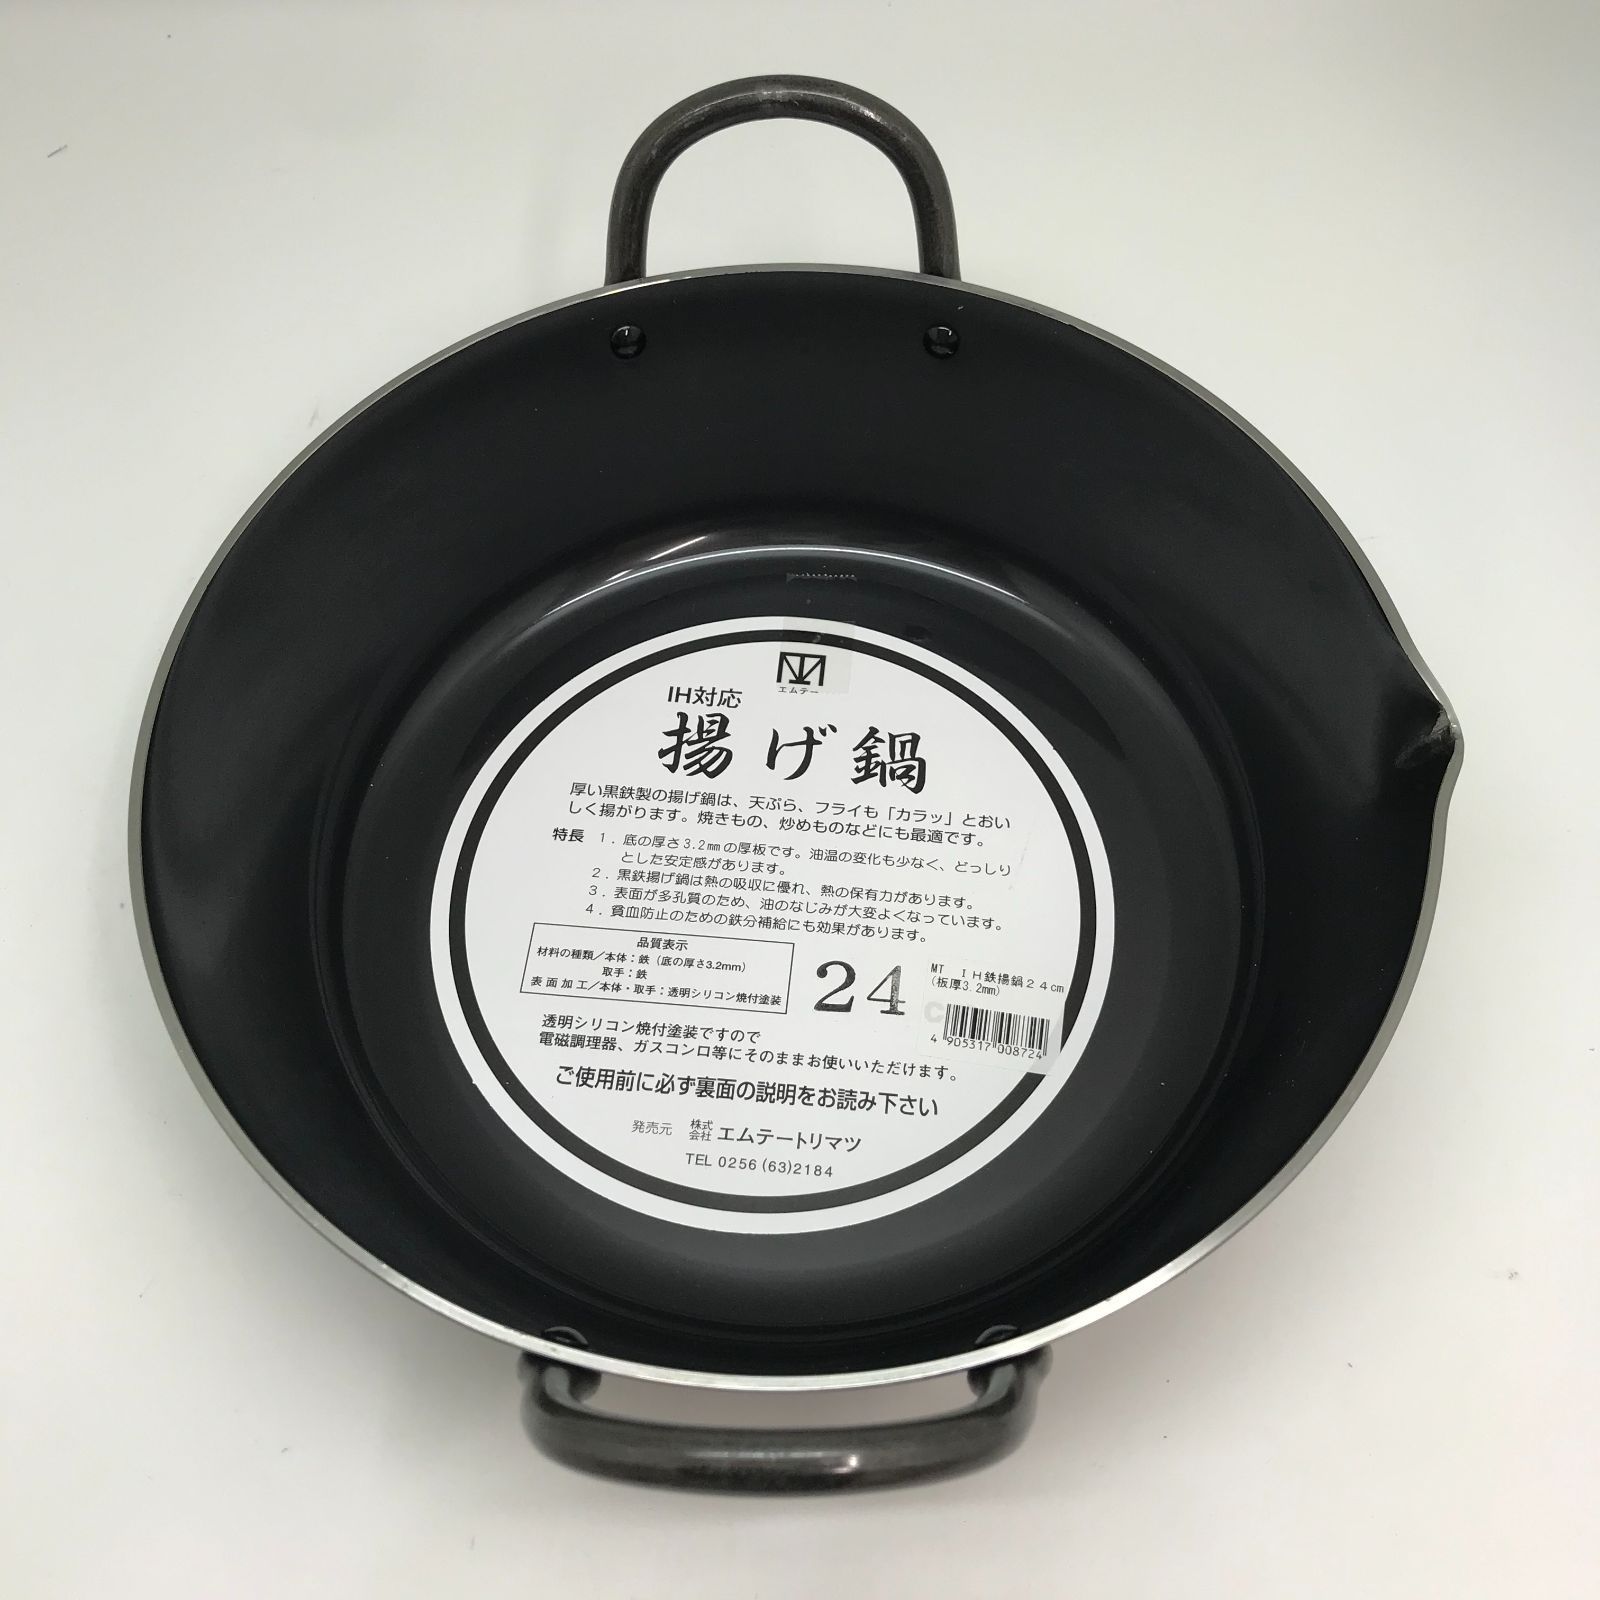 揚げ鍋・天ぷら鍋 45cm MT(エムテー) IH鉄揚鍋 (板厚3.2mm) - キッチン